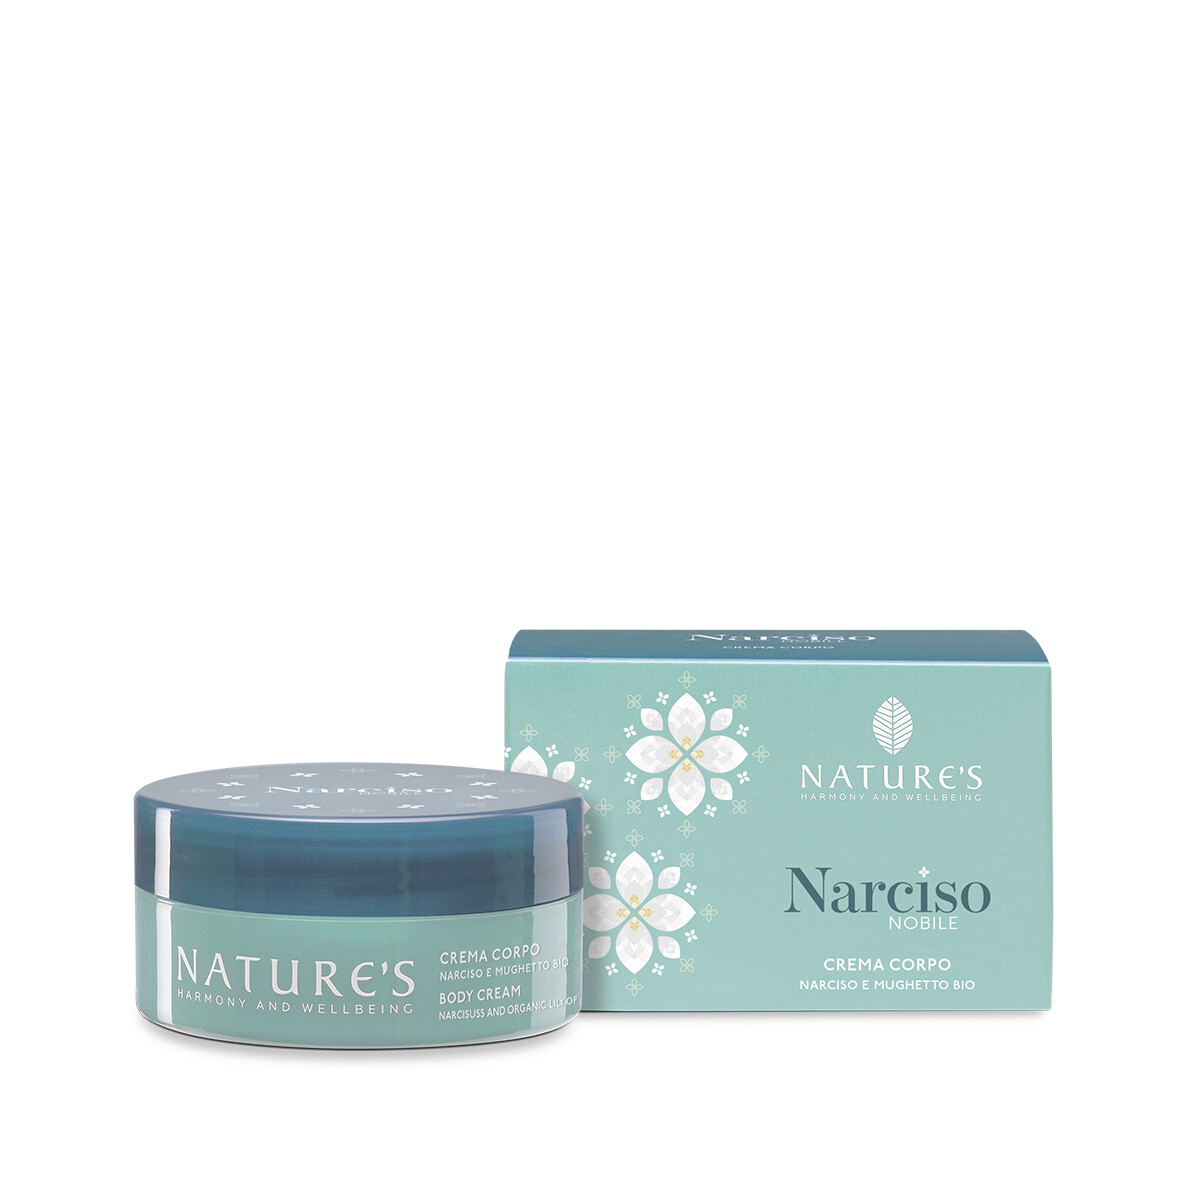 Crema Corpo - Narciso Nobile - Nature's, Formato: 200ml